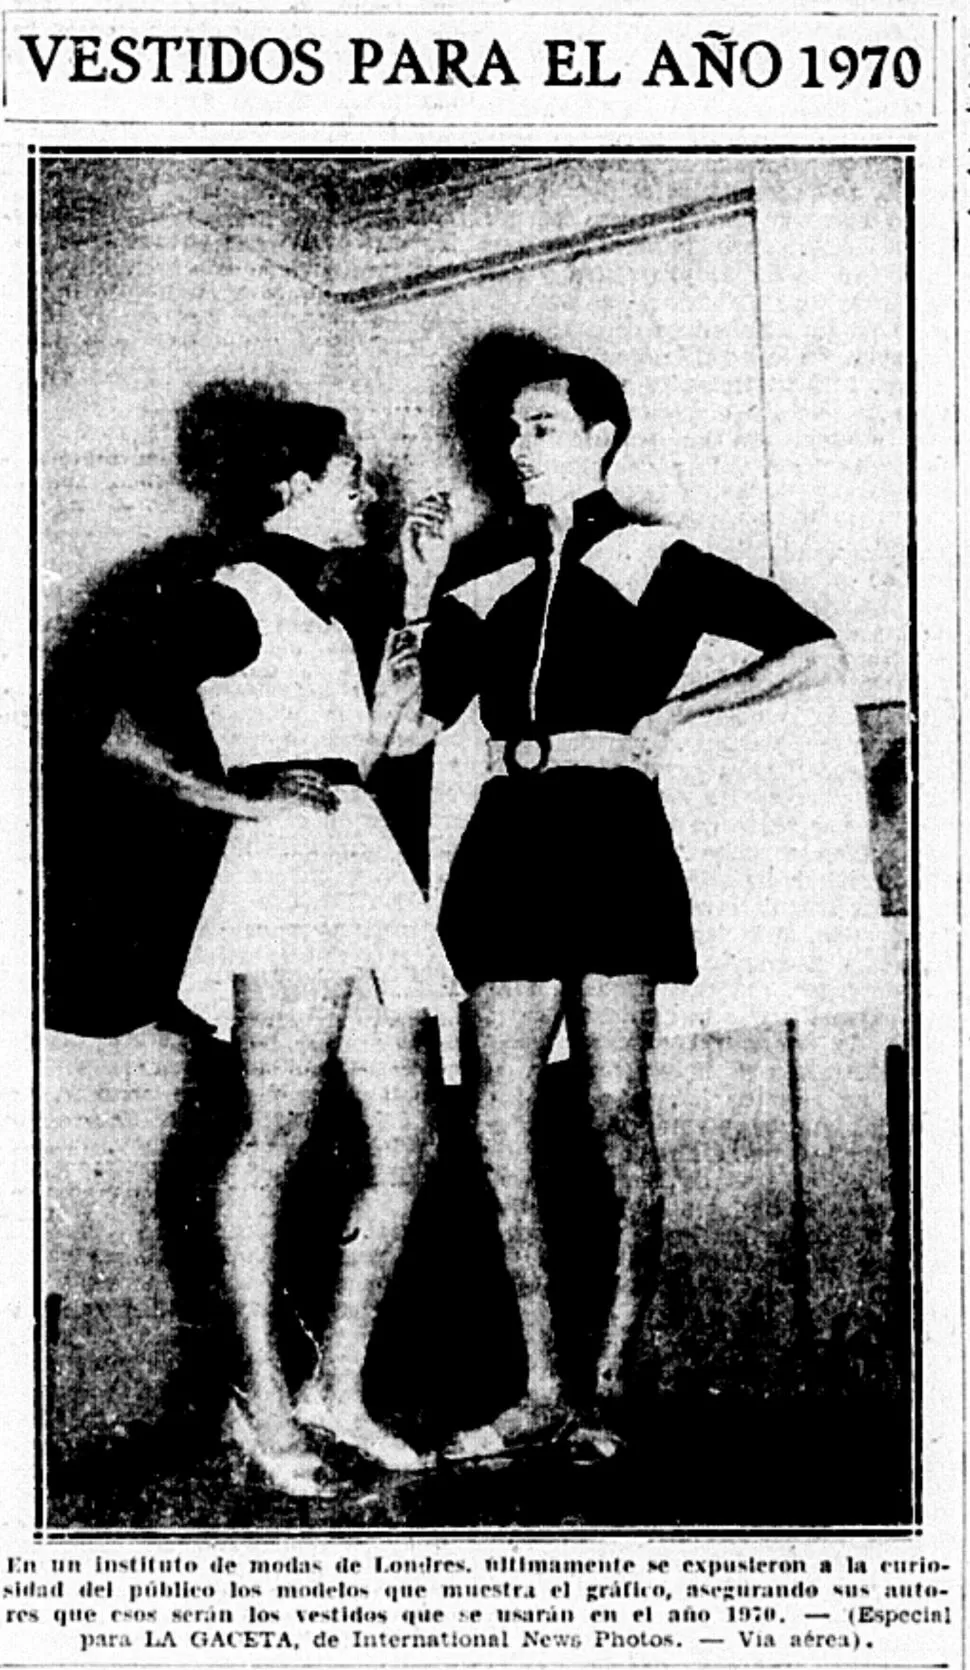 VISION DE FUTURO. Hombre con vestidos cortos era una propuesta de un instituto de moda inglés para tras décadas más tarde.  